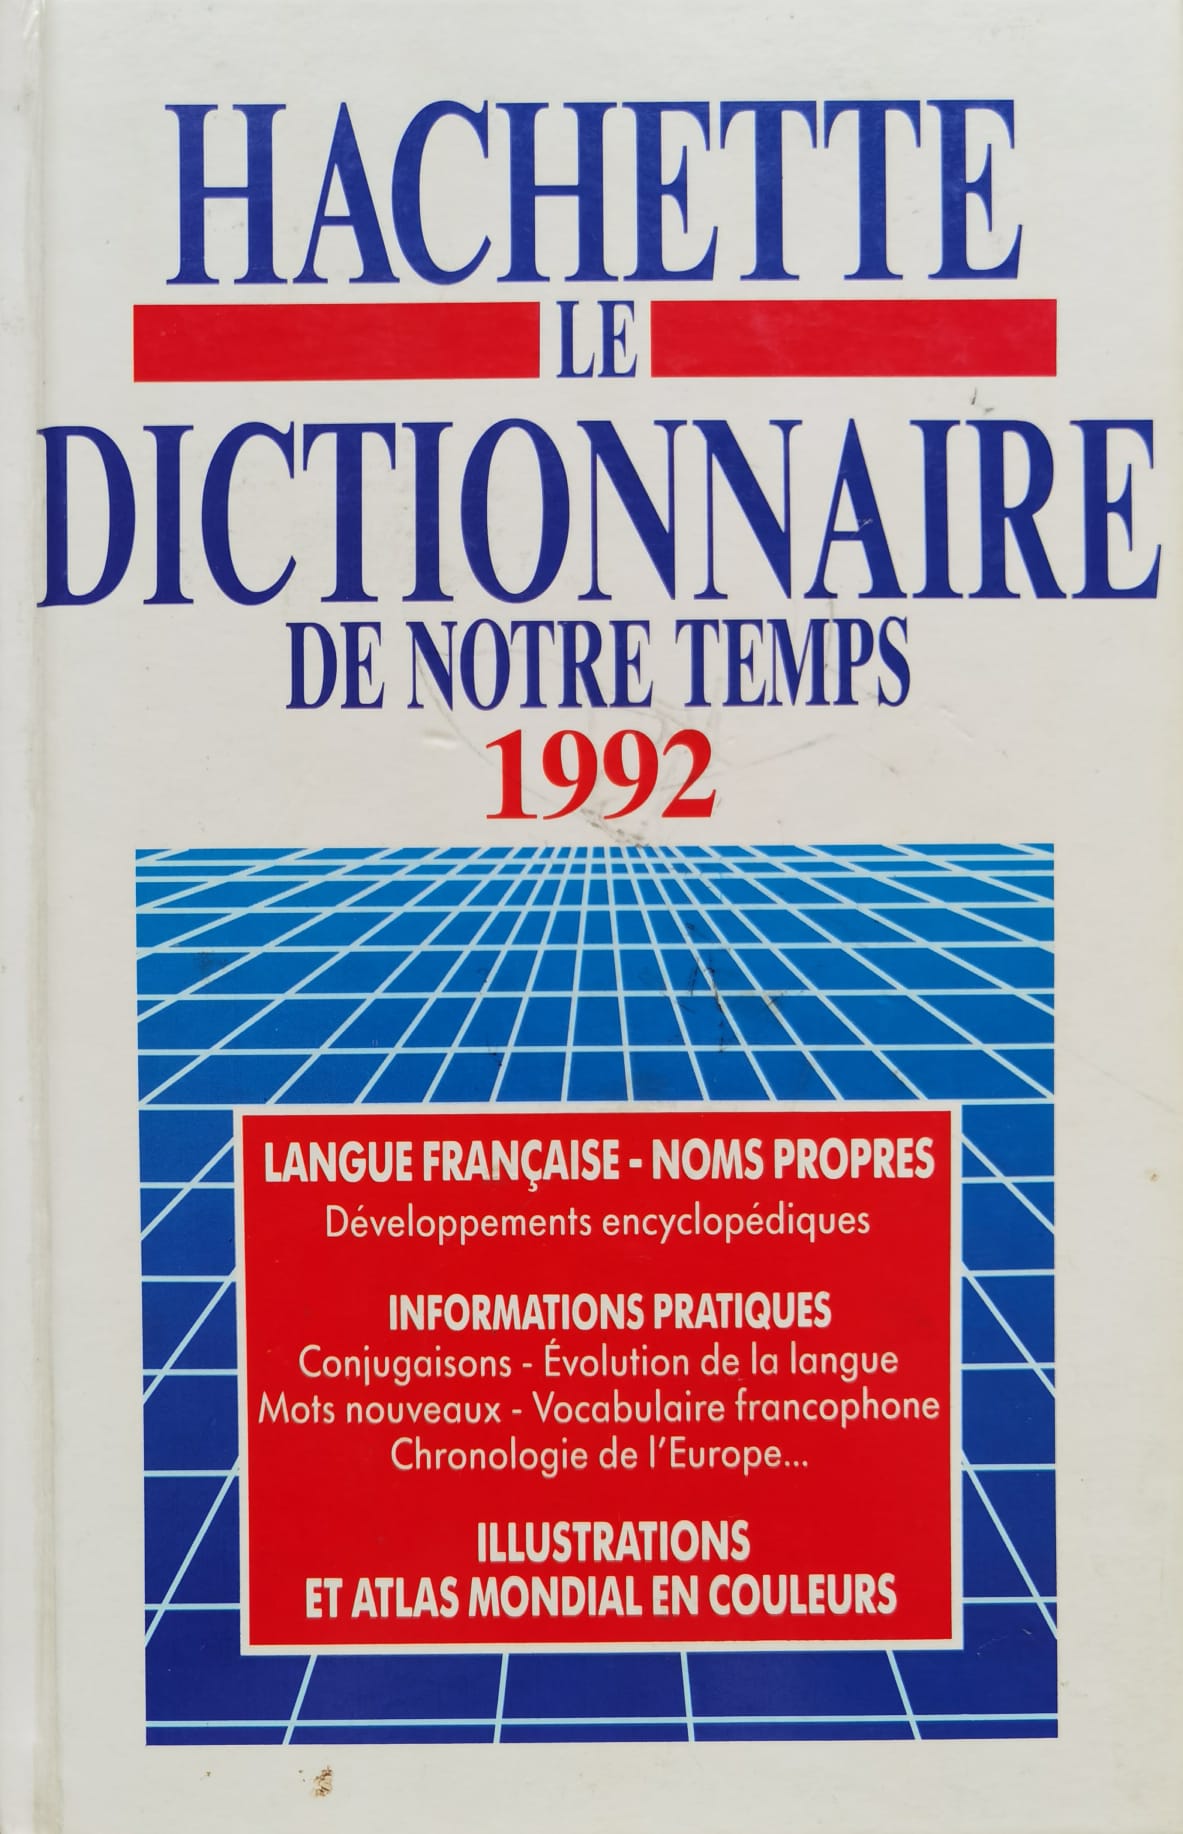 hachette le dictionaire de notre temps 1992                                                          colectiv                                                                                            